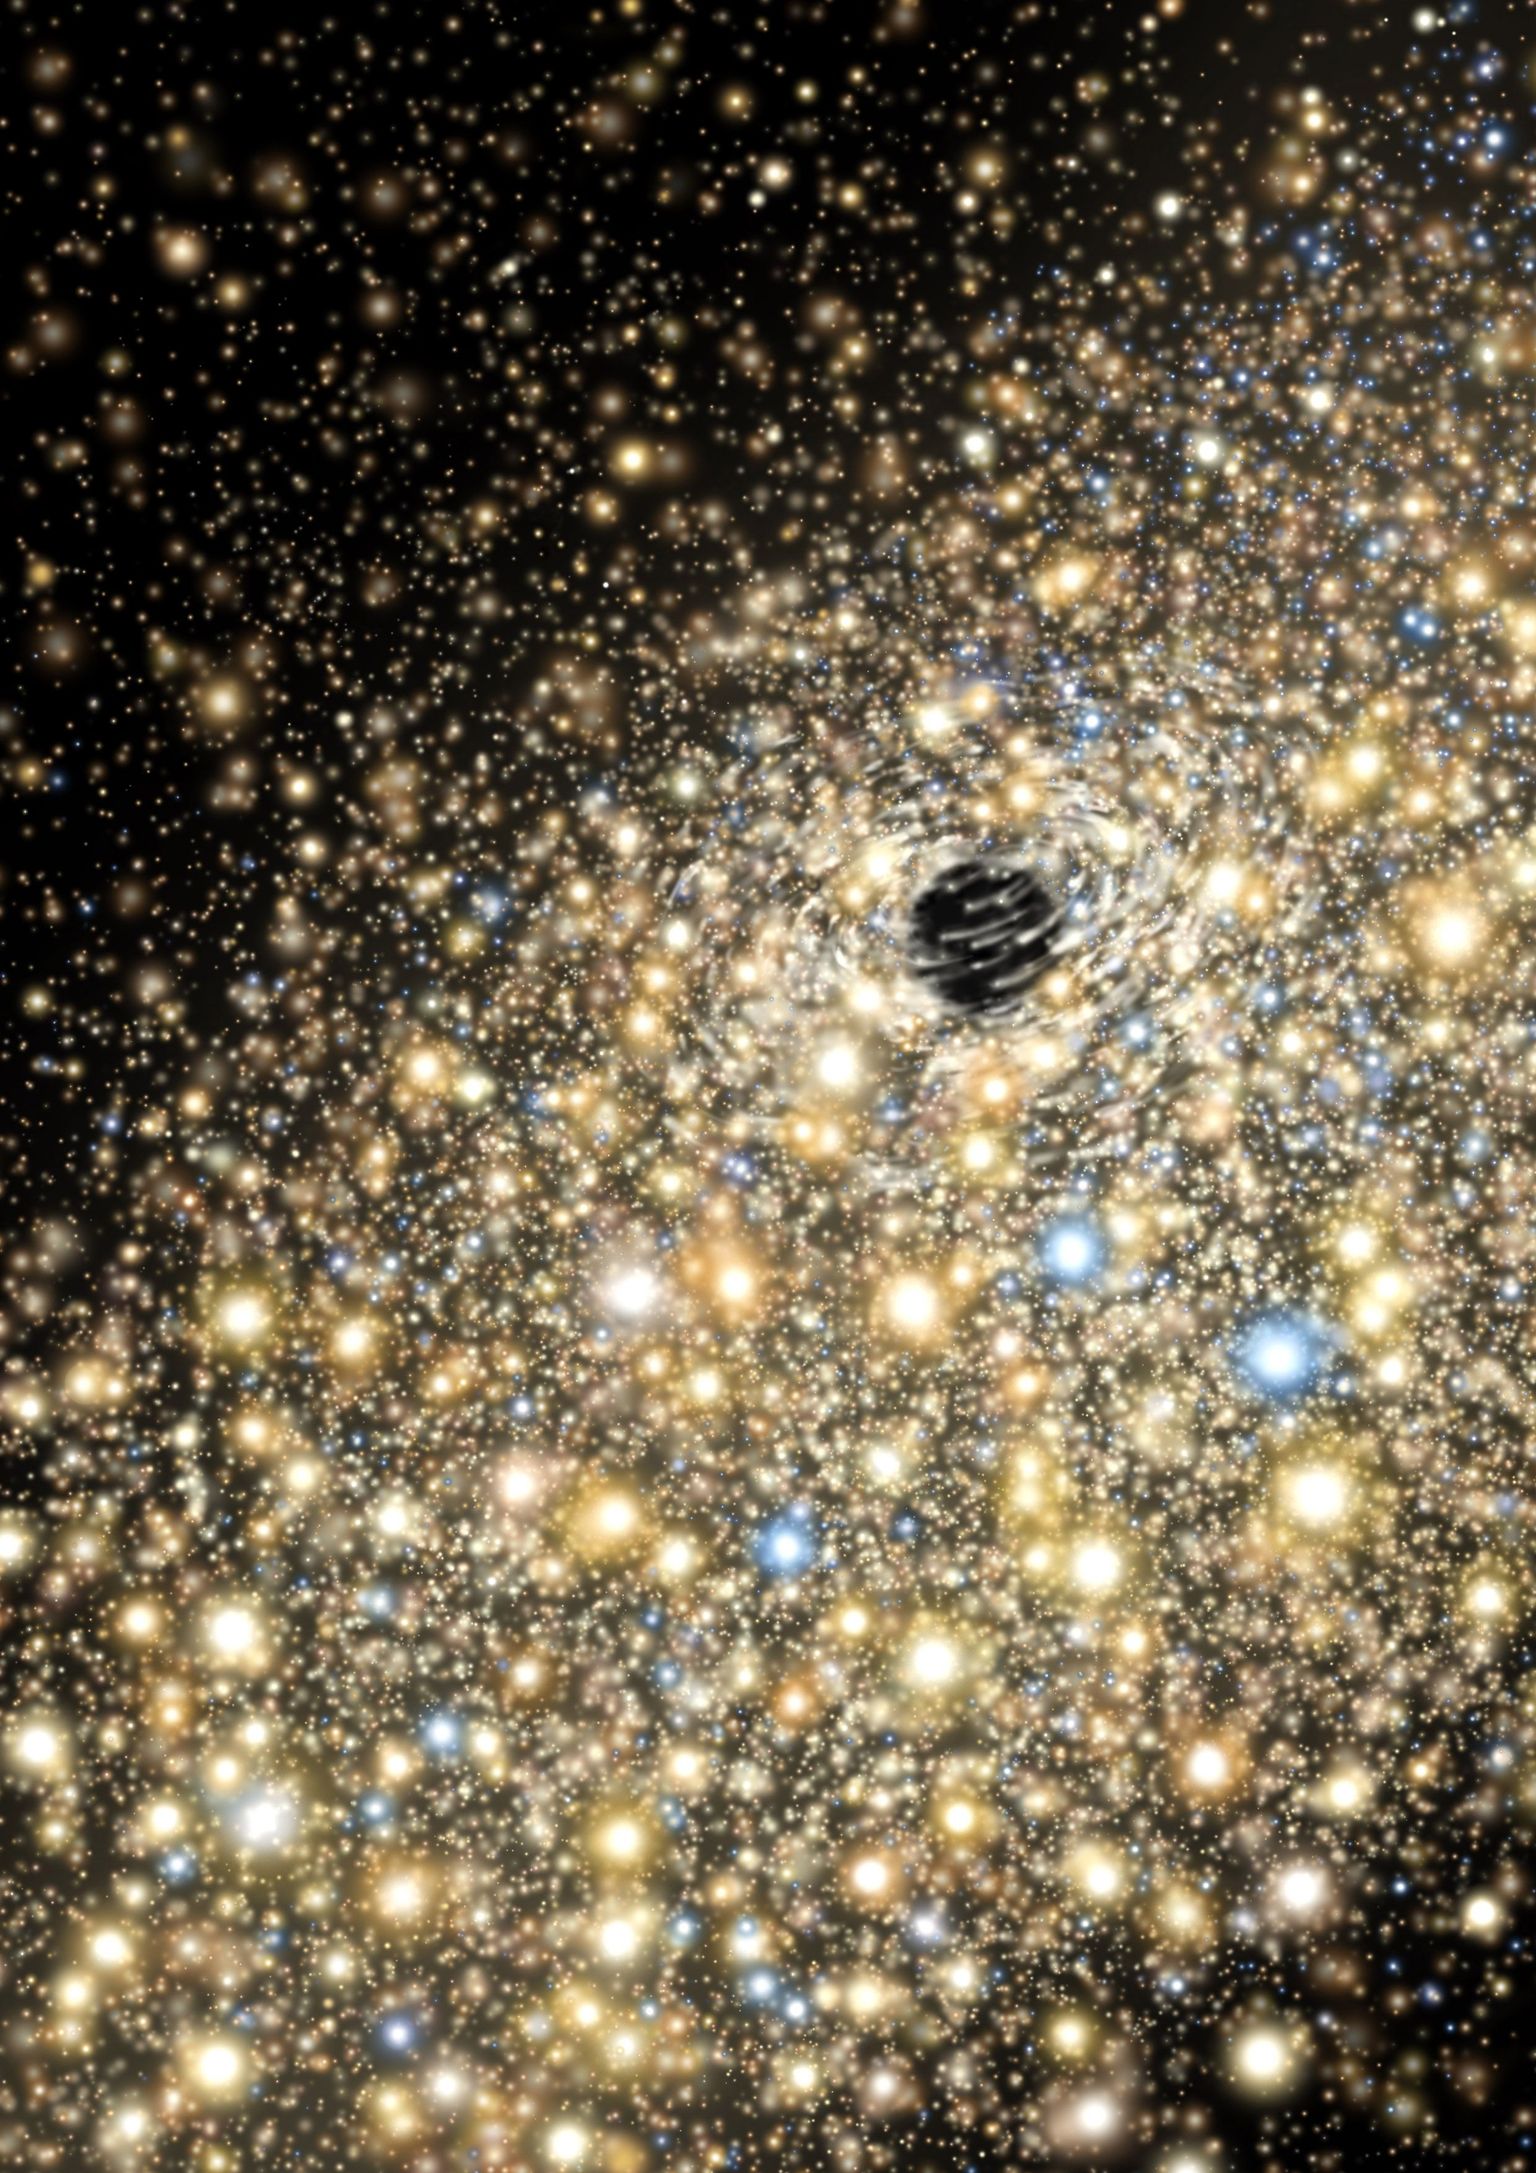 Kunstniku nägemus elliptilises galaktikas asuvats mustast august